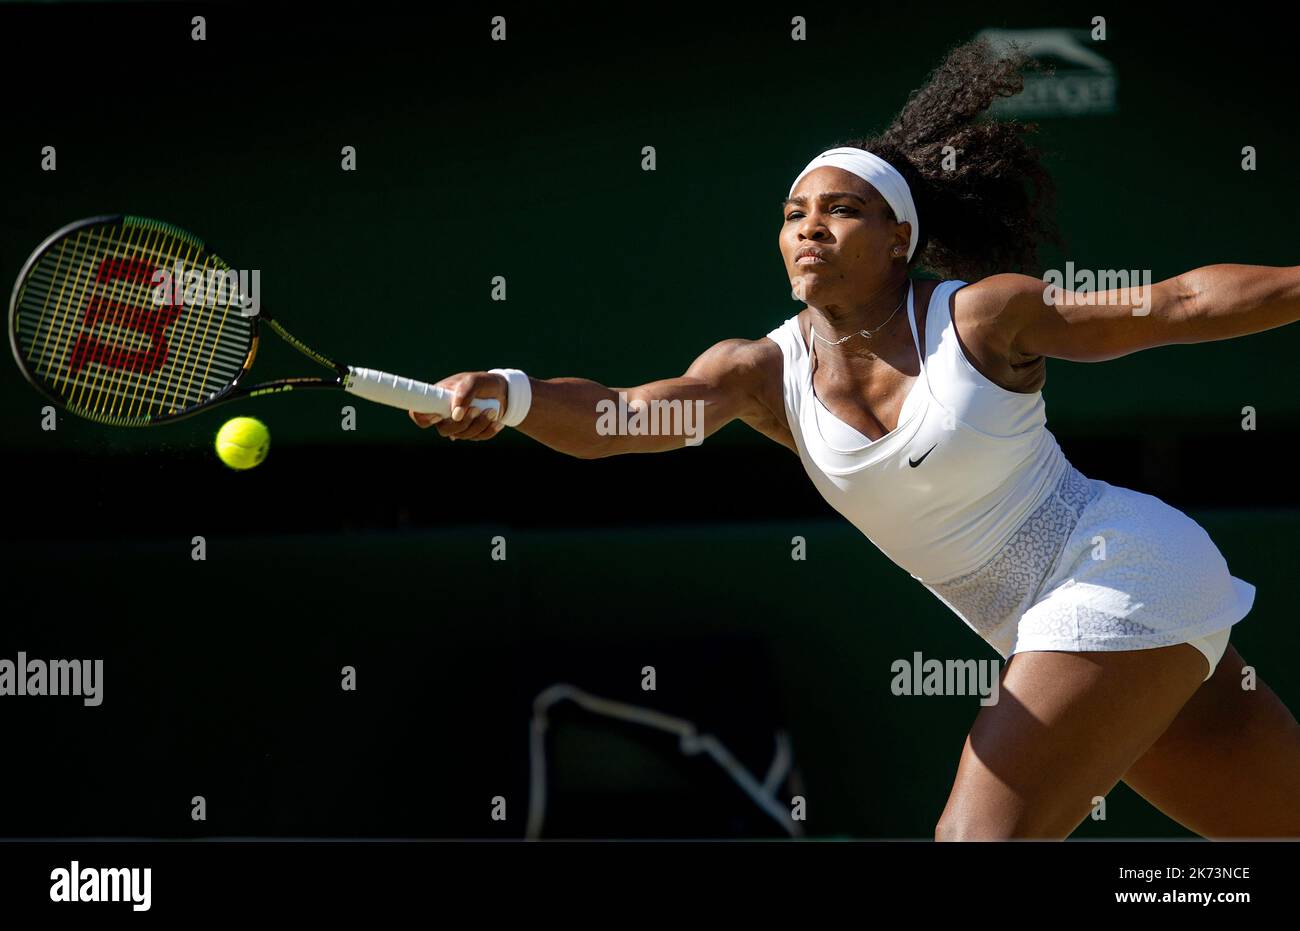 09/07/15. AELTC, Wimbledon Championships 2015, Wimbledon, Londres. Femmes célibataires semi-finale, Serena Williams (Etats-Unis) / Maria Sharapova (Rus), Centre co Banque D'Images